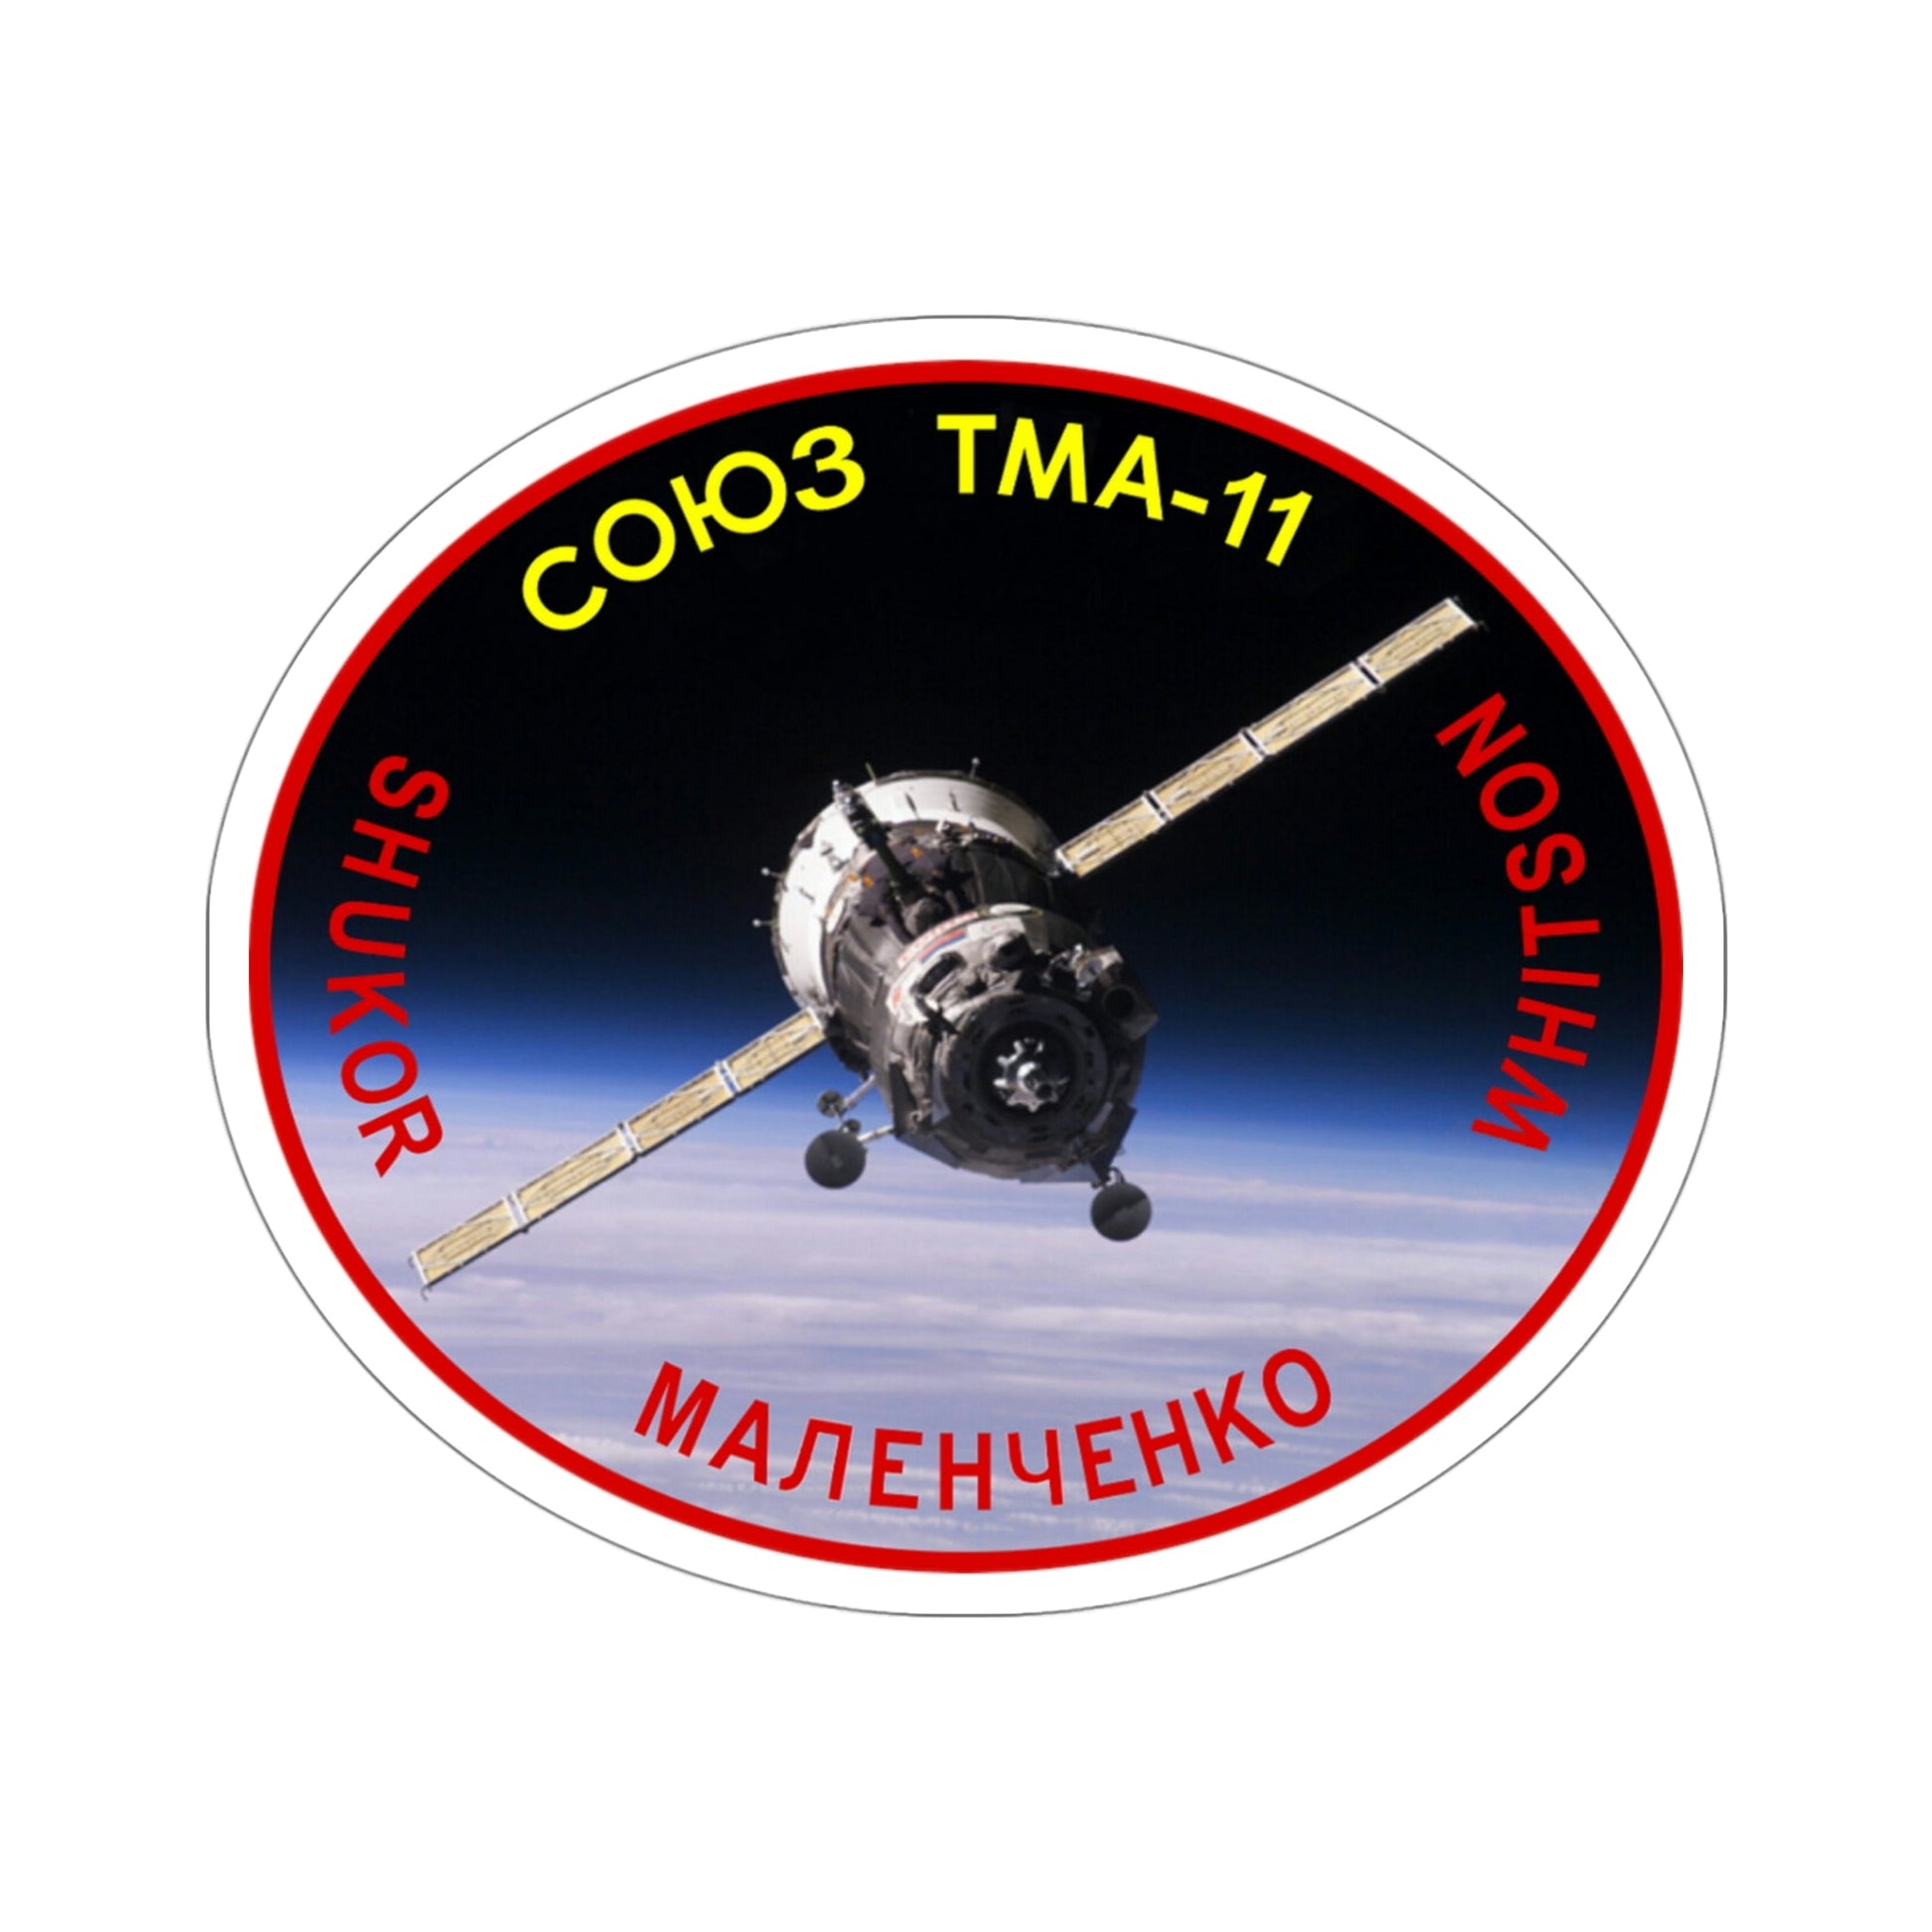 Soyuz TMA-11 (Soviet Space Program) STICKER Vinyl Die-Cut Decal-4 Inch-The Sticker Space